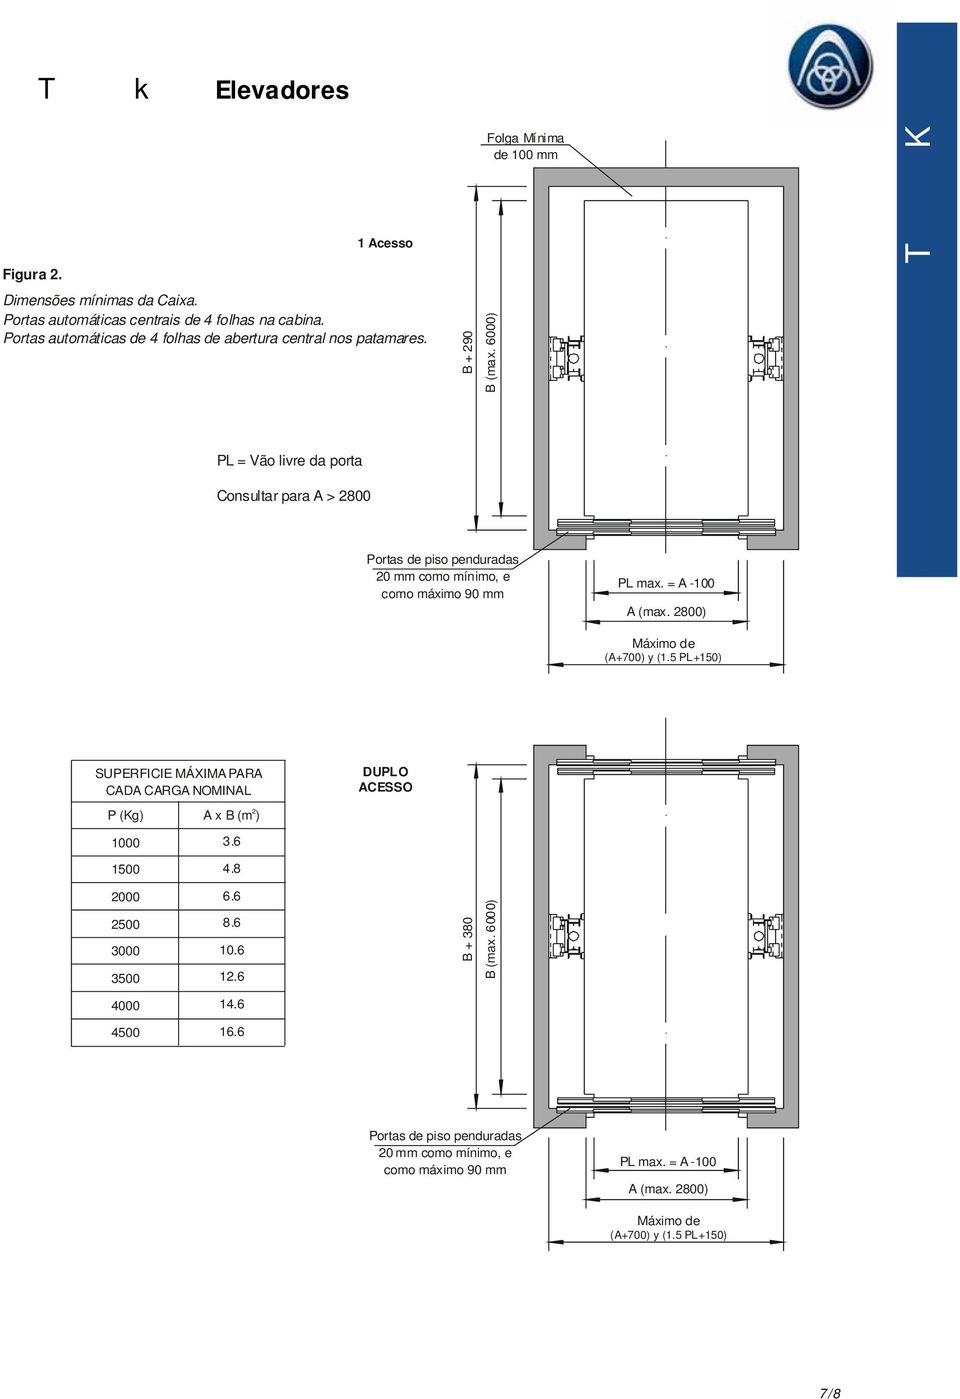 6000) PL = Vão livre da porta Consultar para A > 2800 Portas de piso penduradas 20 mm como mínimo, e como máximo 90 mm PL max. = A -100 A (max. 2800) Máximo de (A+700) y (1.